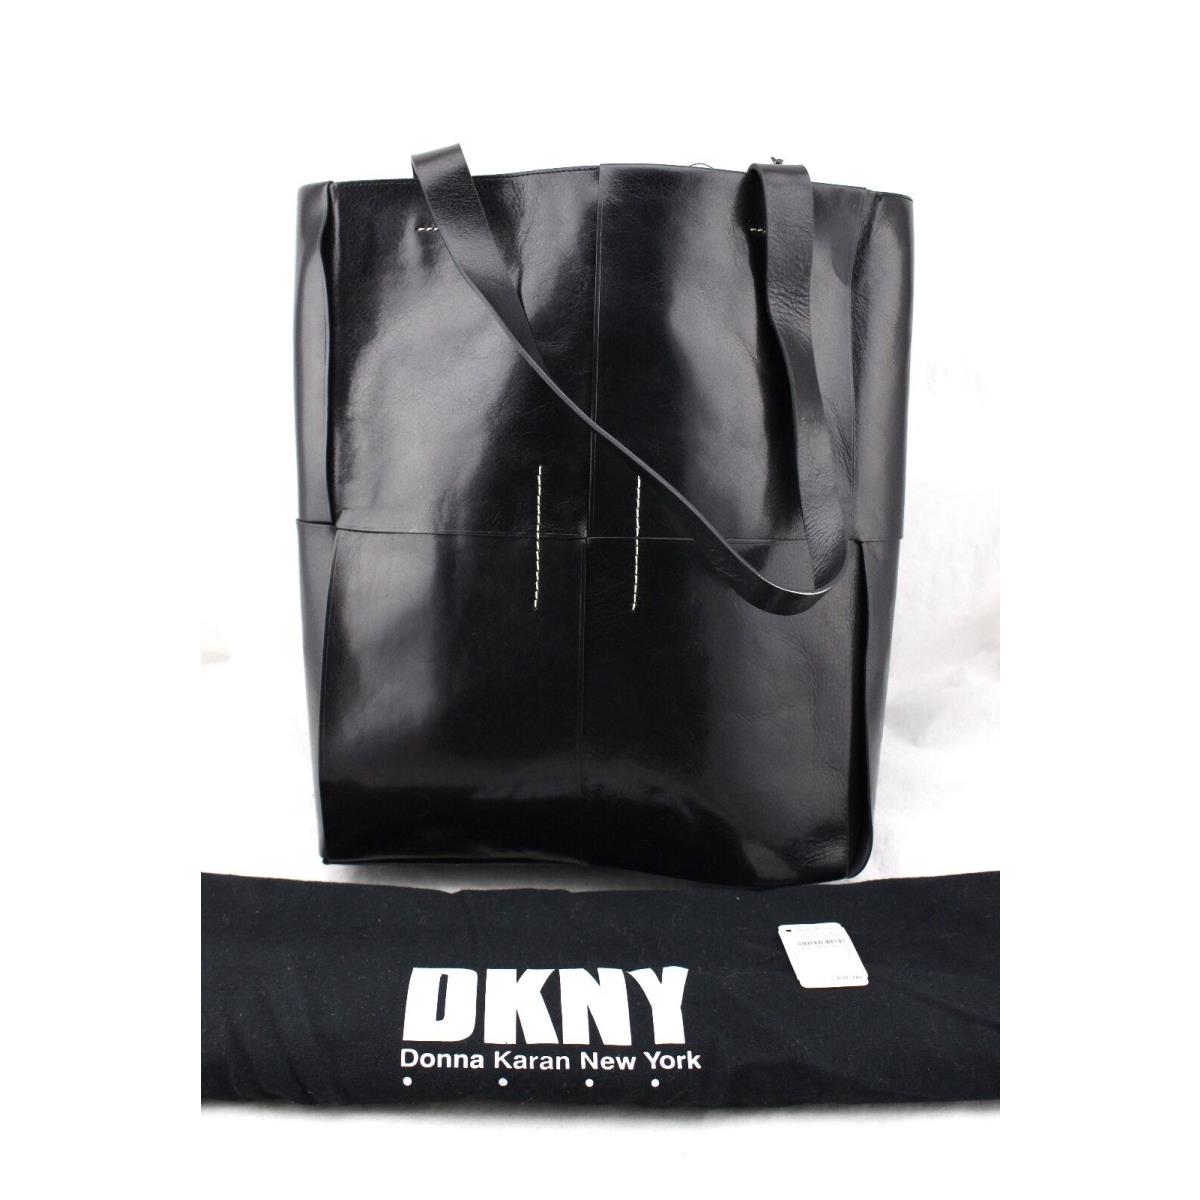 Donna Karan DKNY large black leather Tote shoulder Bag shopper purse shopper new